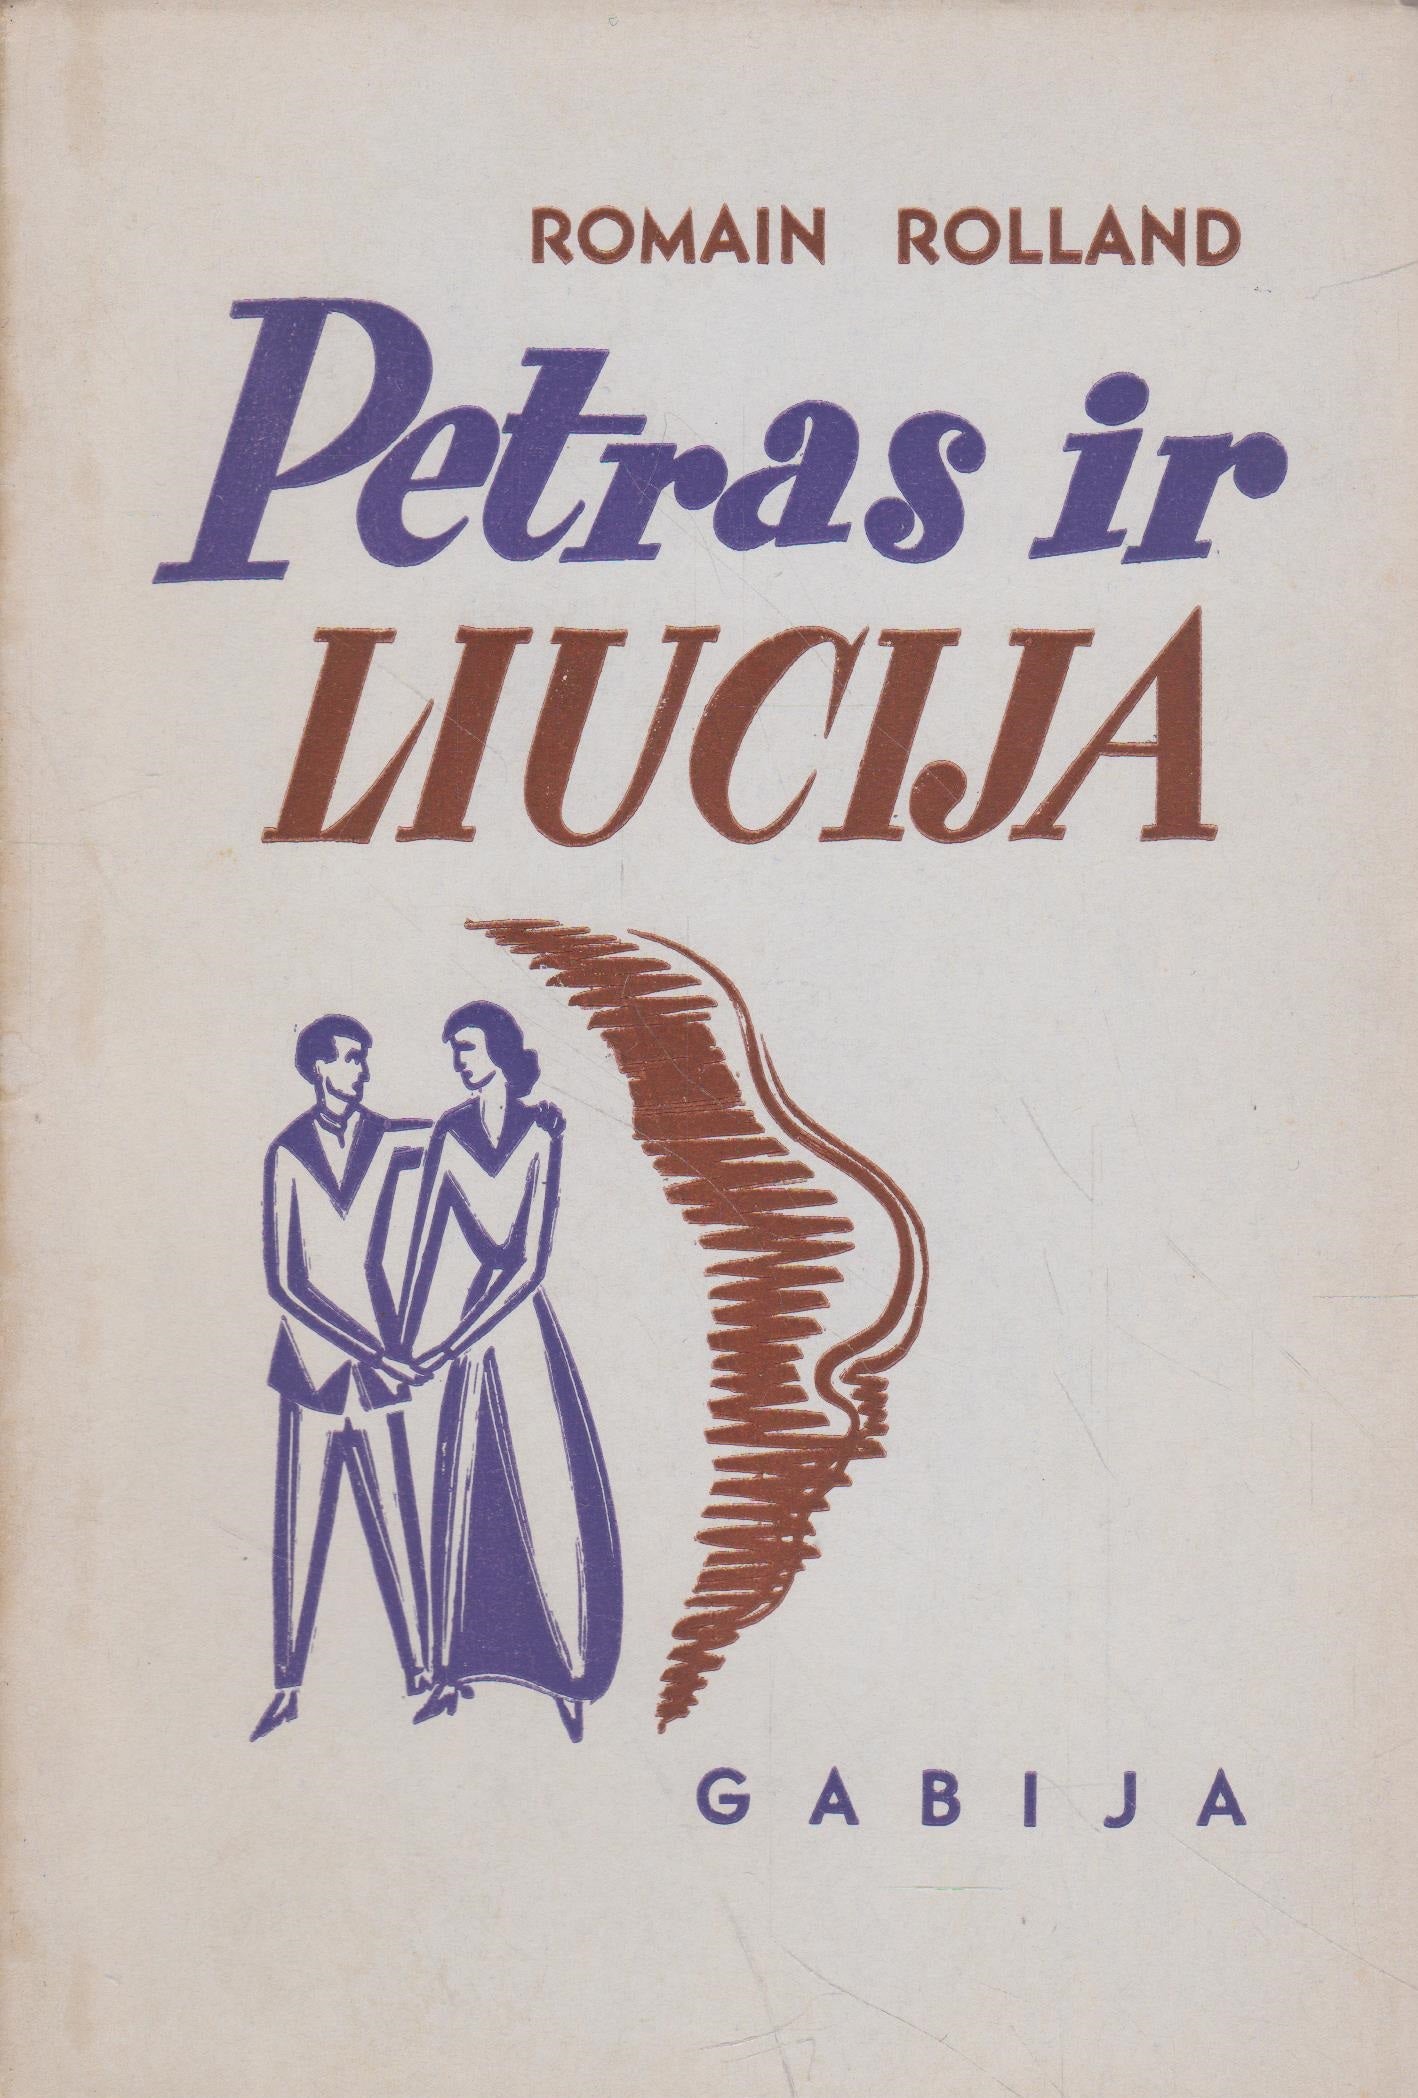 Romain Rolland - Petras ir Liucija, 1952, New York